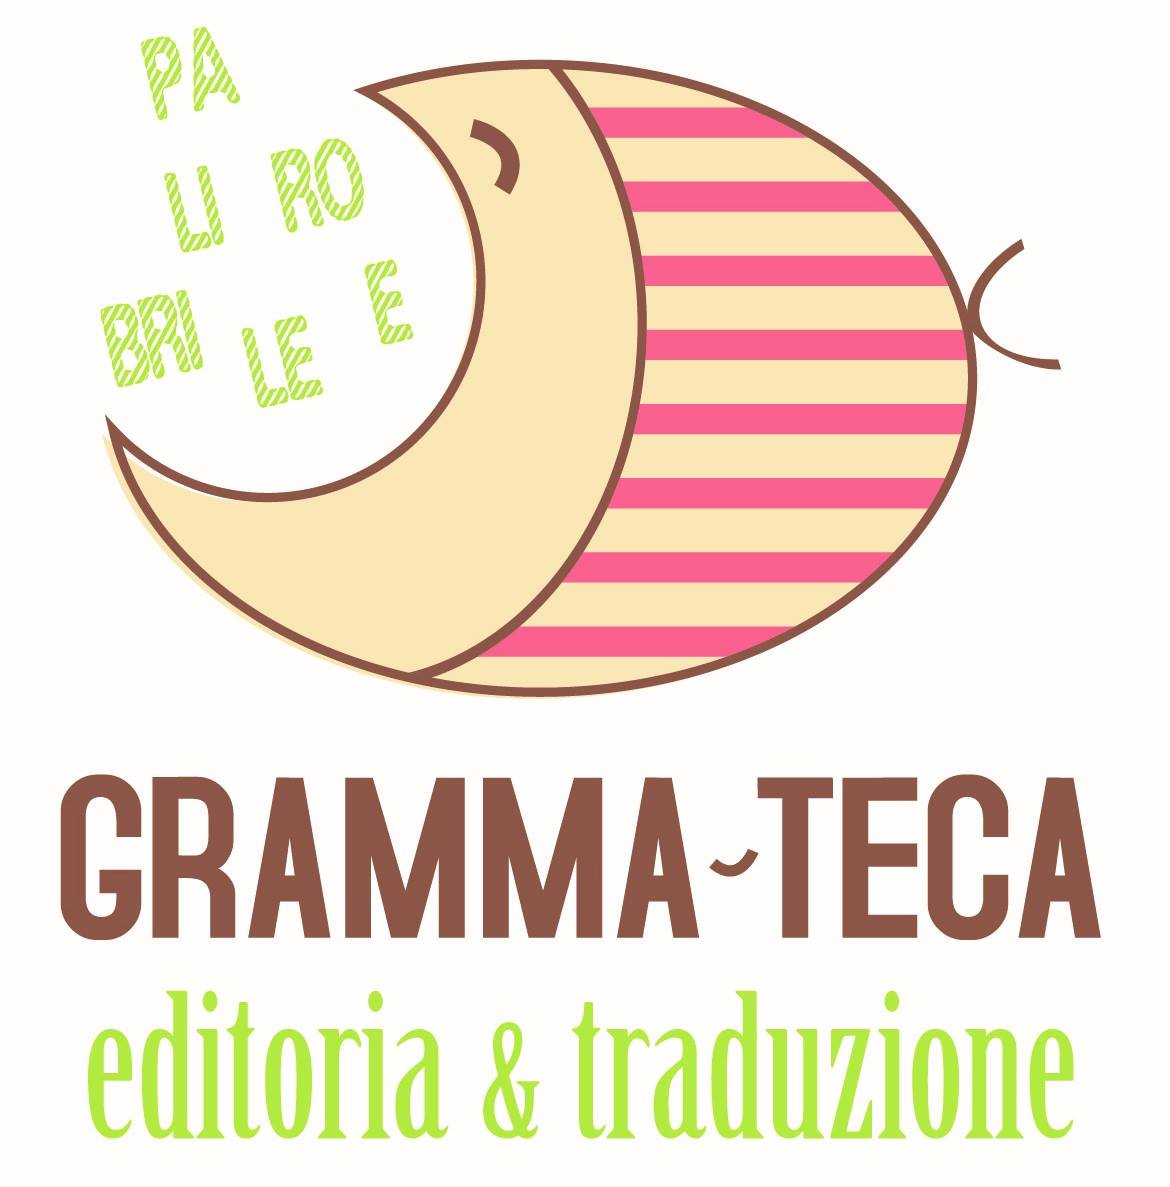 Gramma-teca, editoria e traduzione. Logo ufficiale.